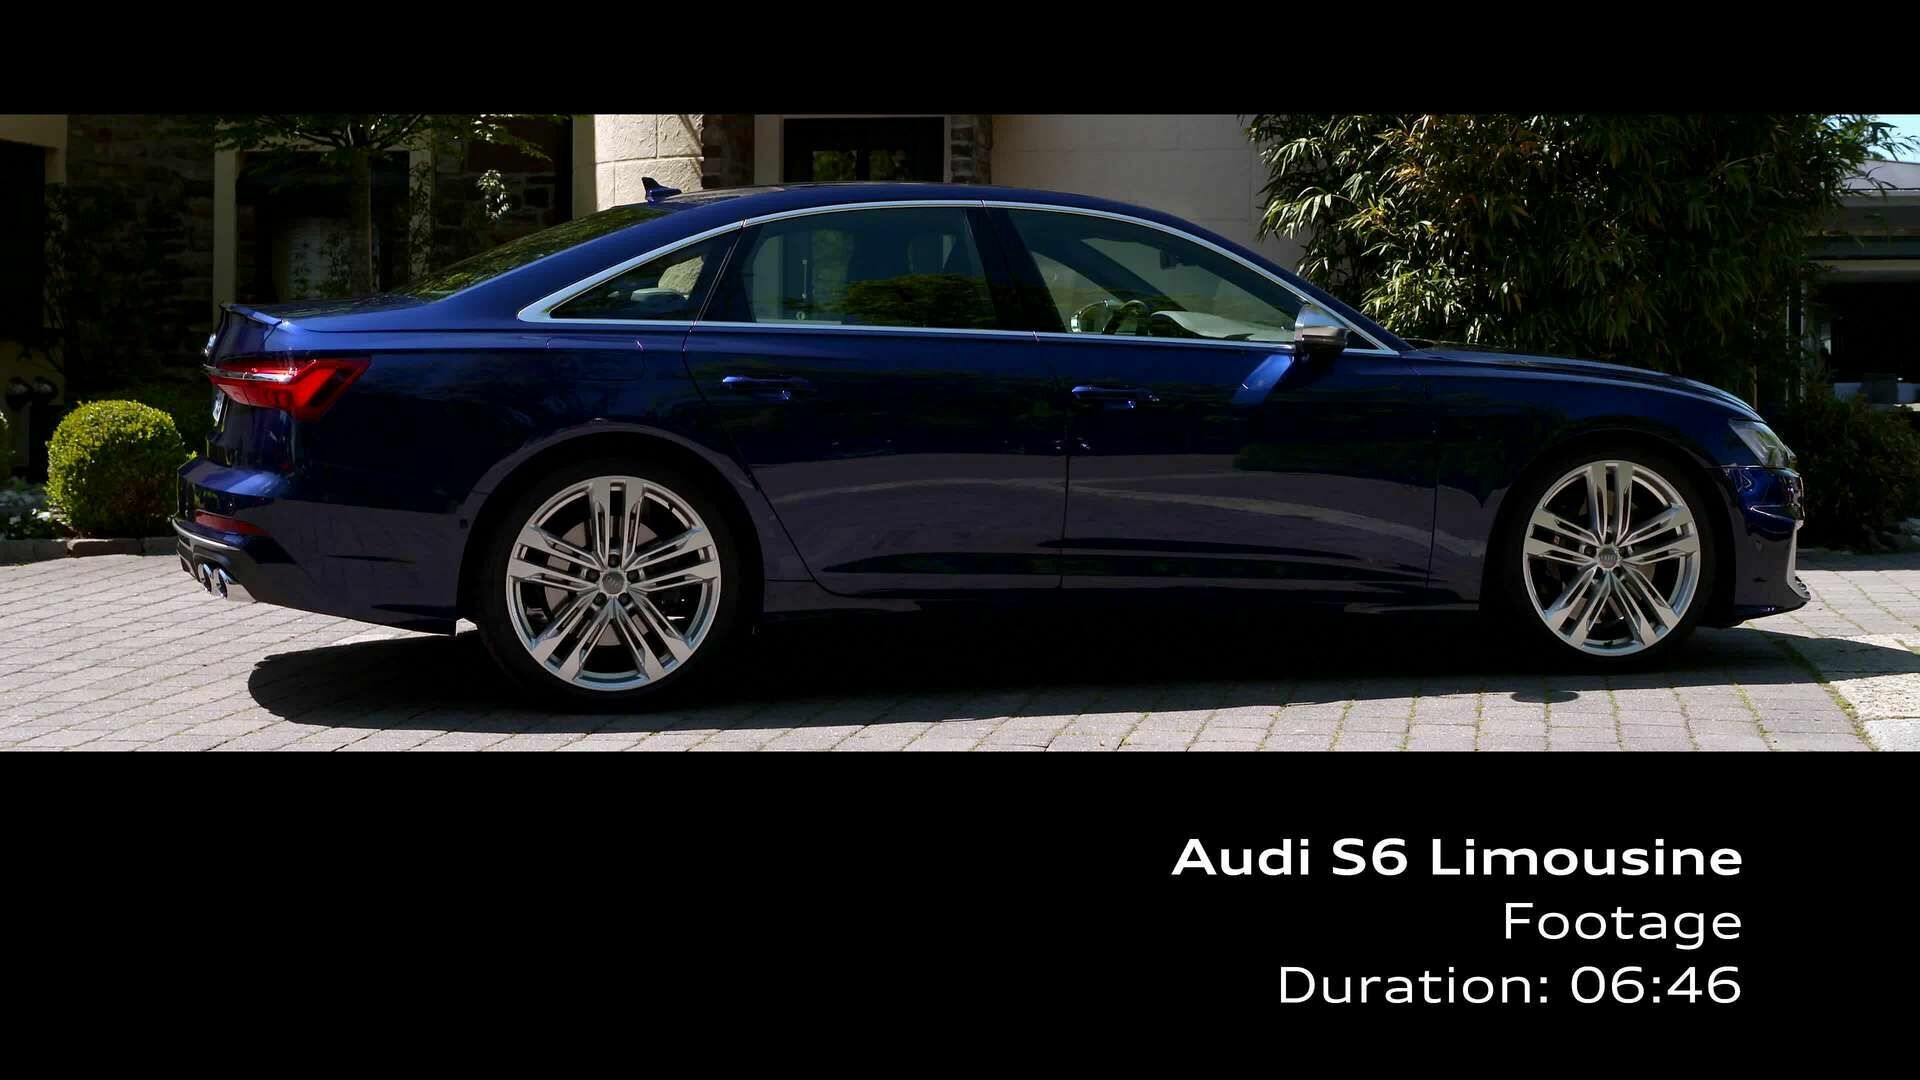 Audi S6 Limousine (Footage)